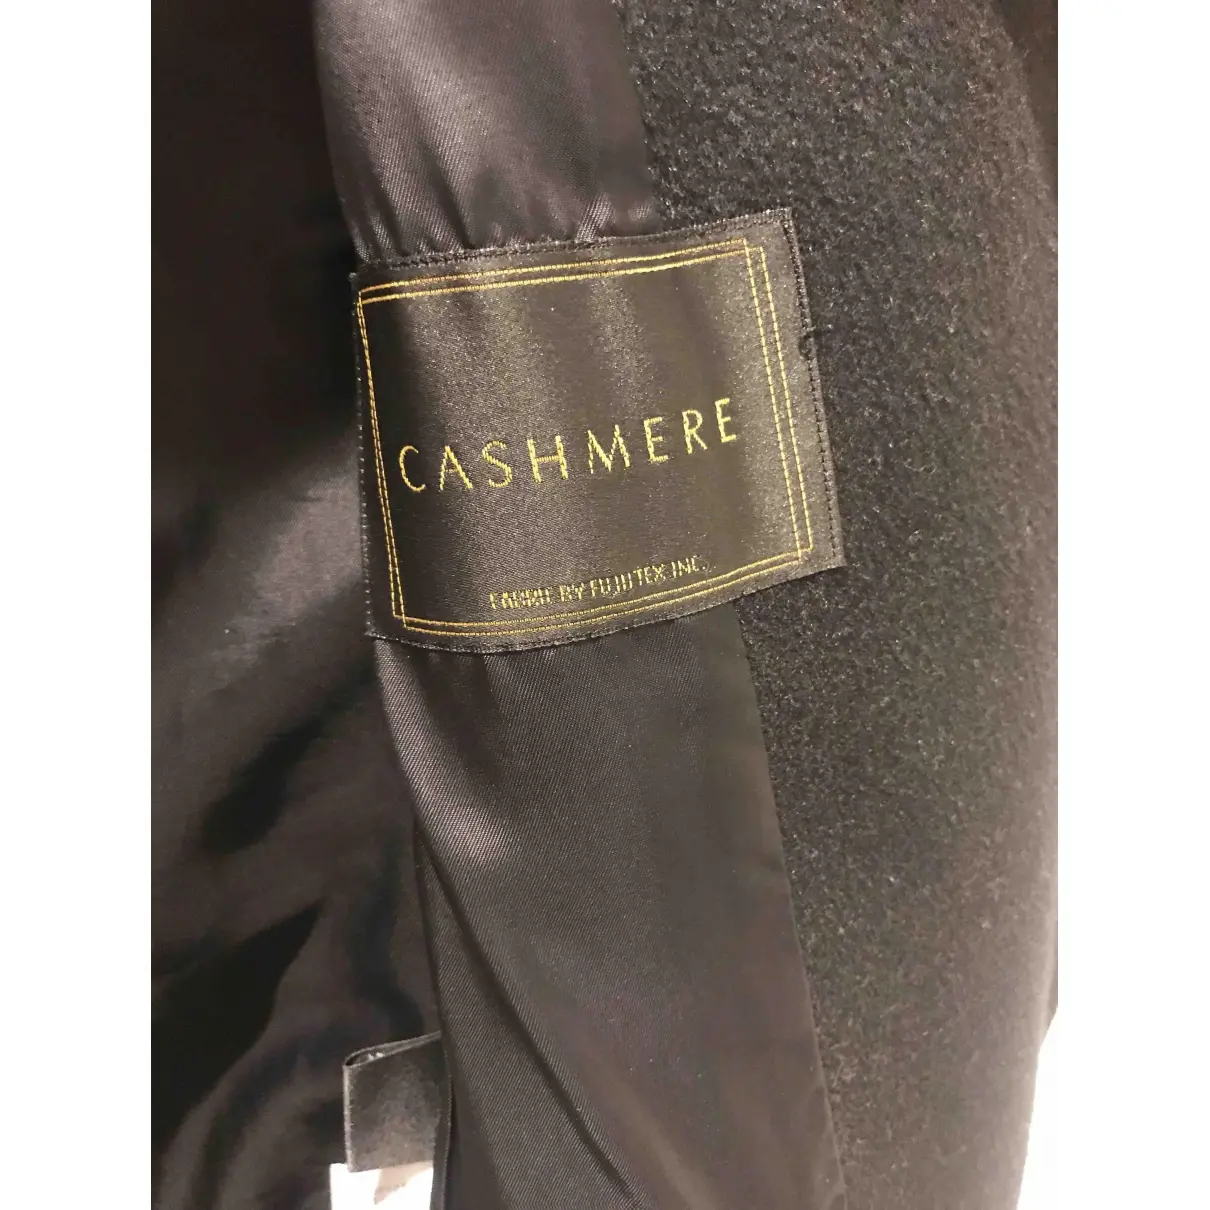 Buy Ines Et Marechal Cashmere coat online